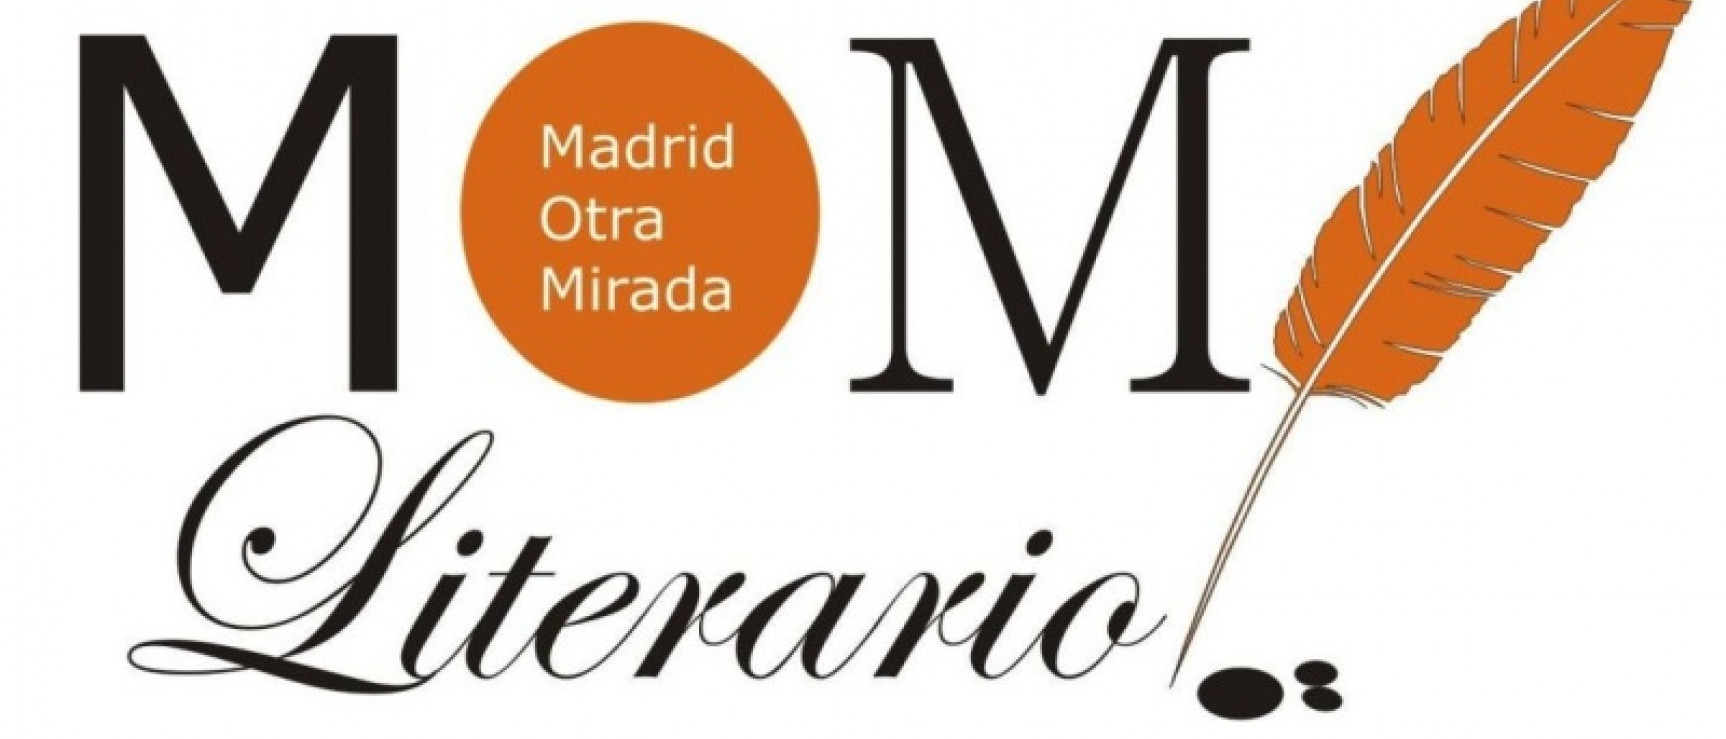 Logotipo de Madrid Otra Mirada 2016.